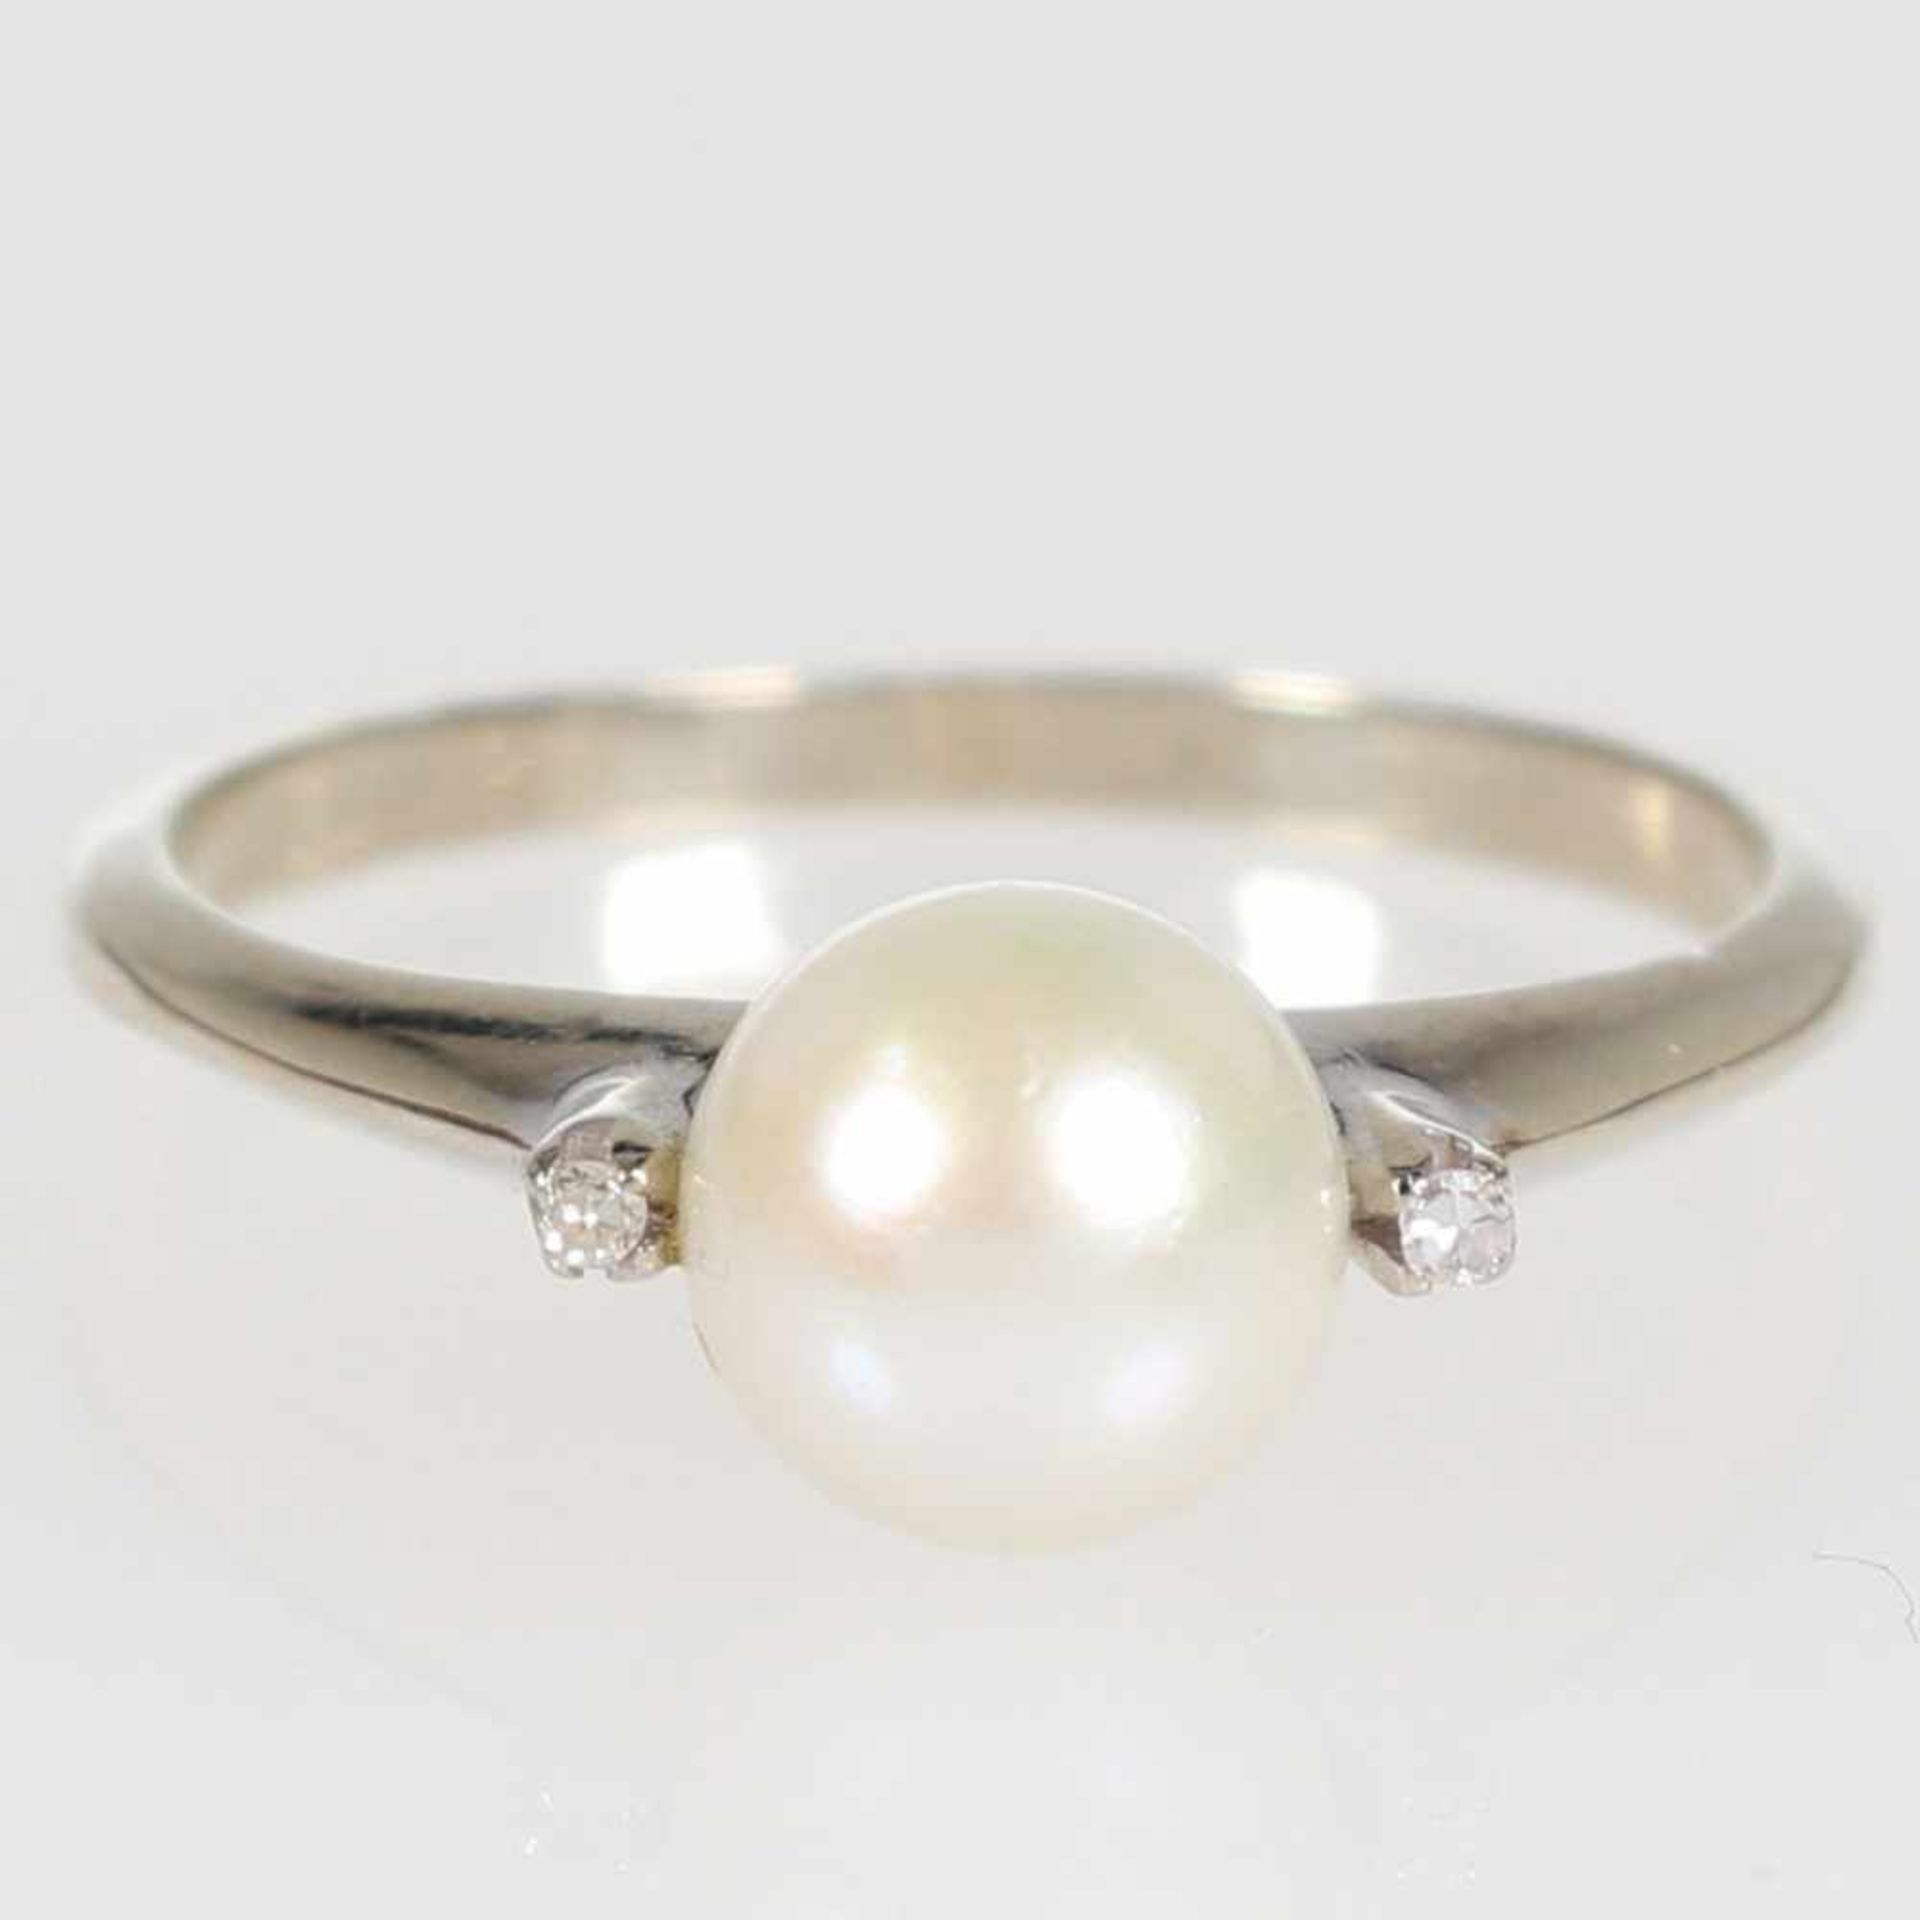 Ring-Paar:Solitärring mit weißer Perle 750/- Weißgold, geprüft. Gewicht: 2,7 g. 2 Diamanten im 8/8-